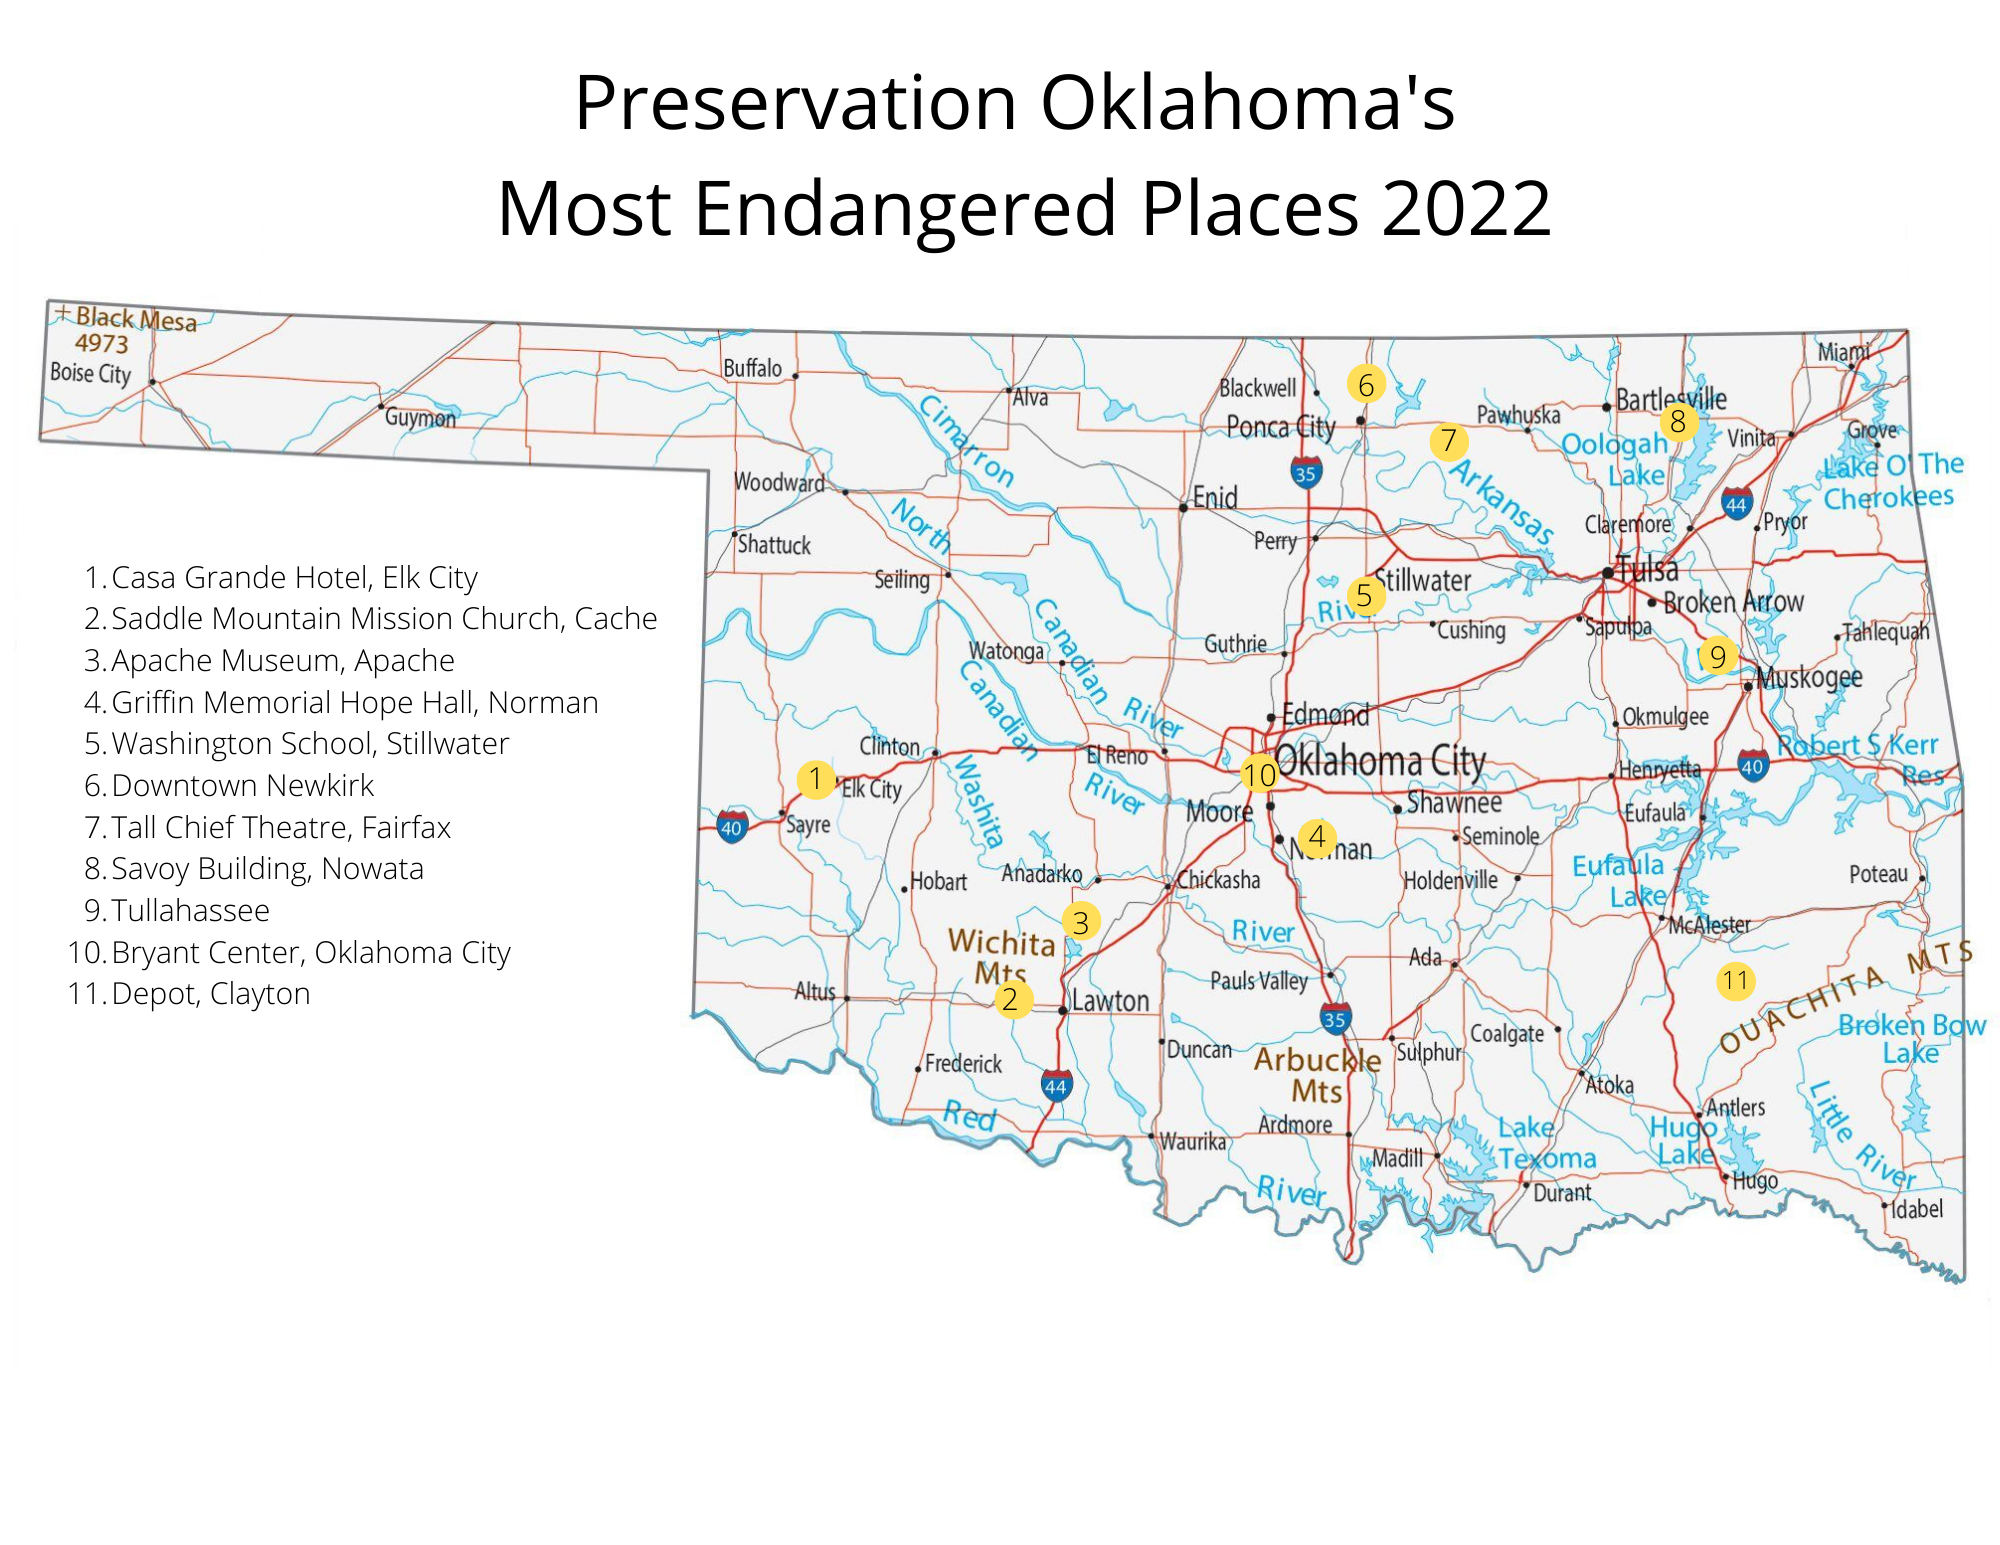 The Oklahoma SHPO's Historic Barns Survey